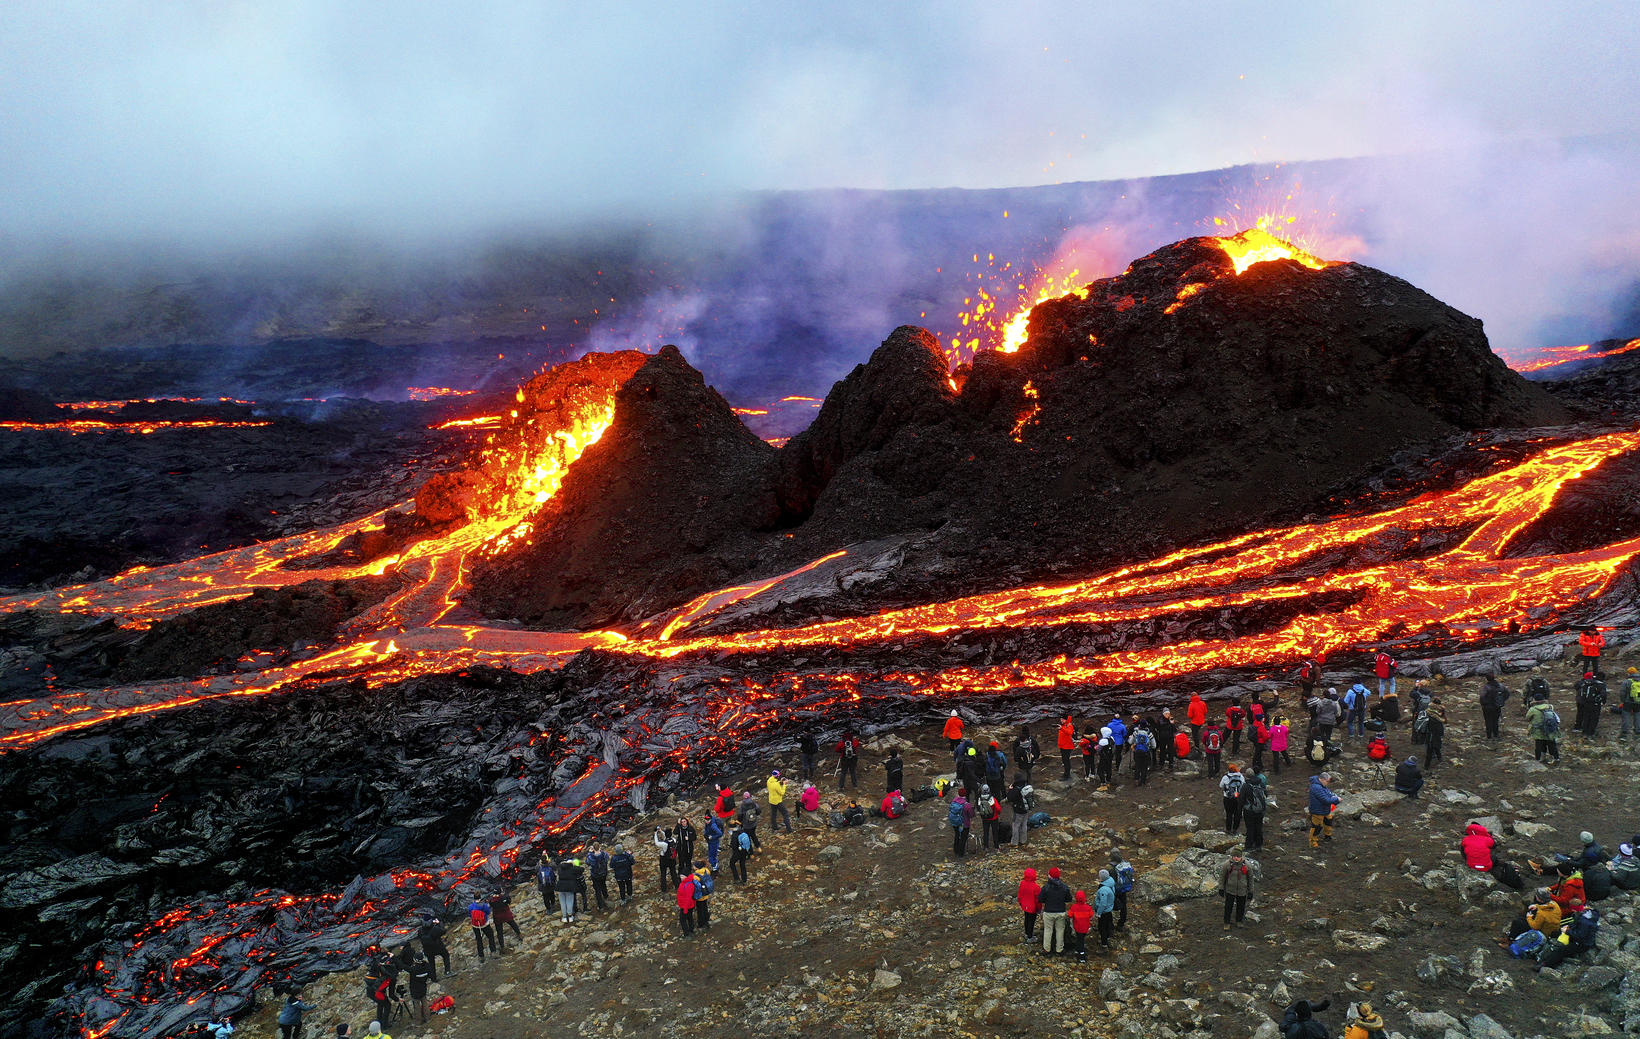 Burning Interest in Buying Eruption Land - Iceland Monitor